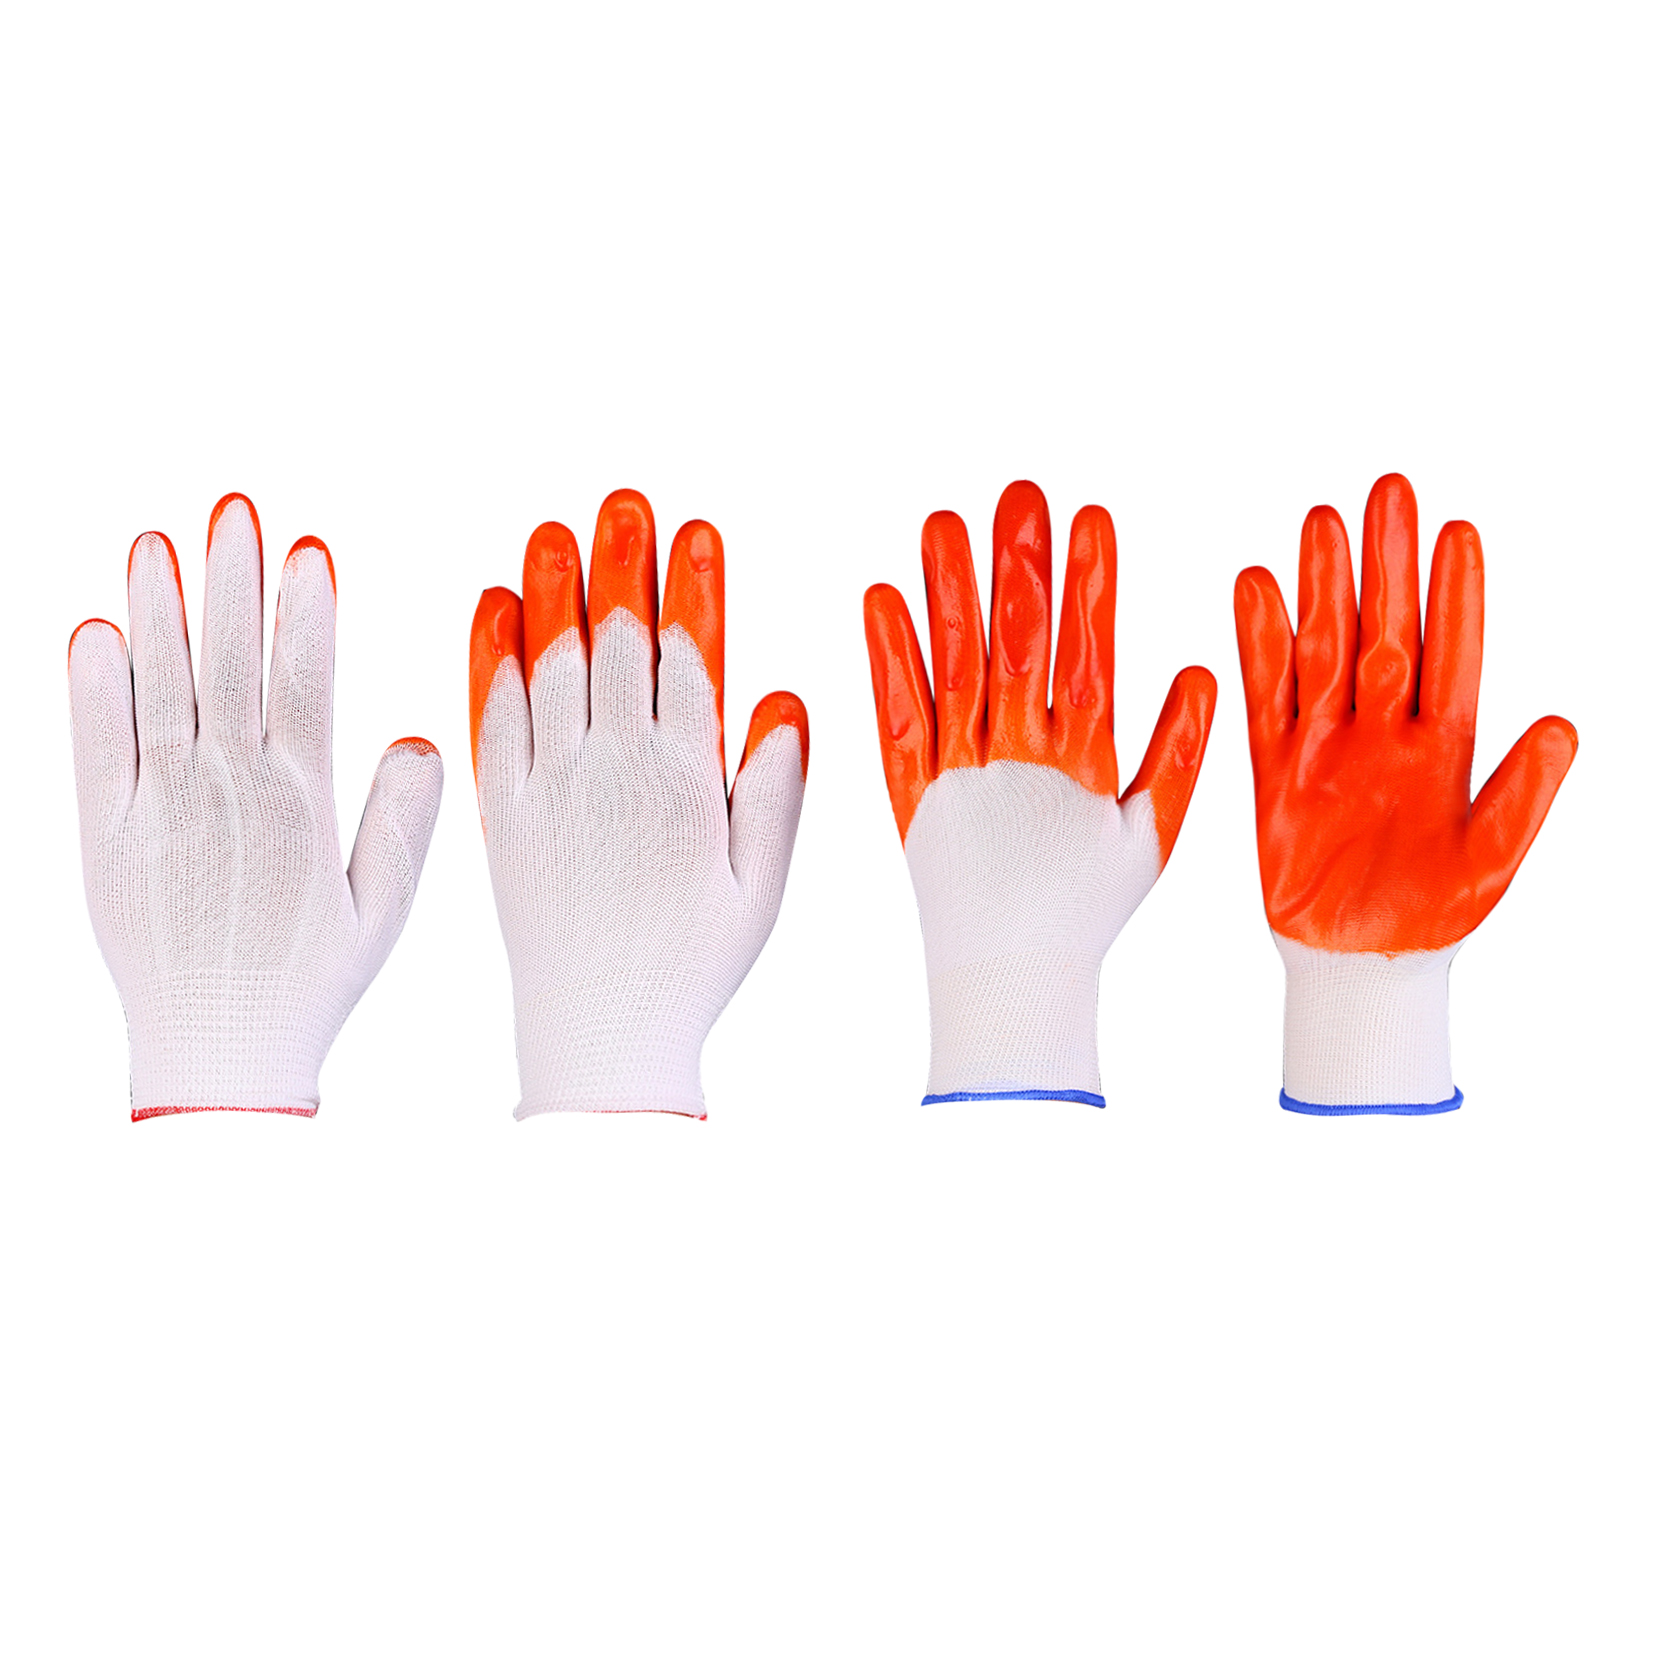 Ochranná bezpečnostná pracovná rukavica s oranžovým nylonom potiahnutá PVC